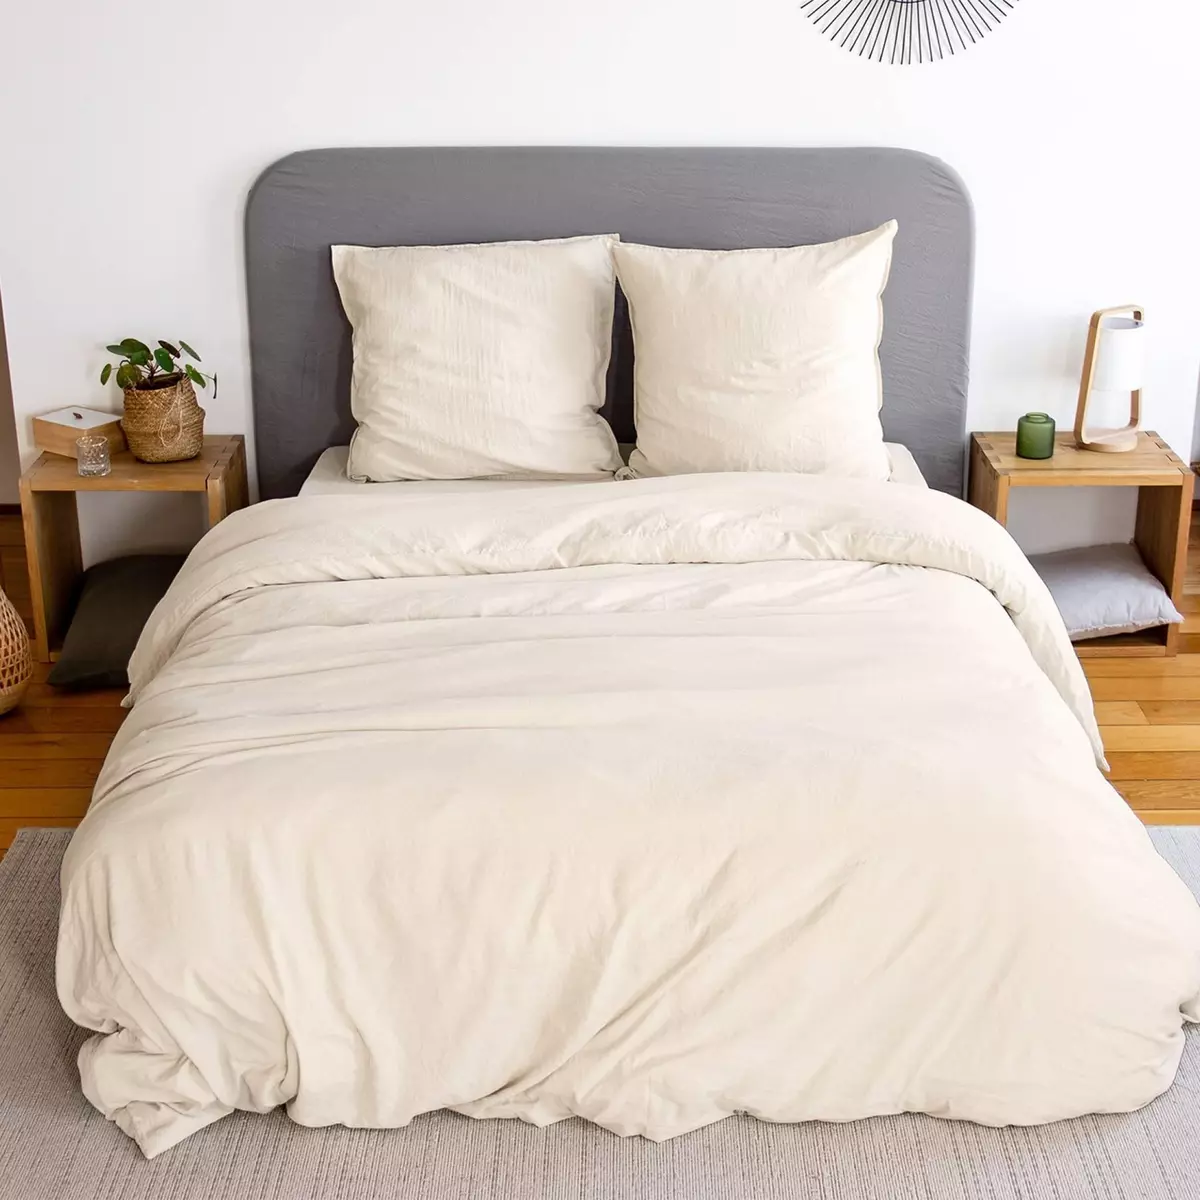 SWEEEK Parure de lit en microfibre lavée, sable, pour lit 2 places avec 2 taies d'oreillers